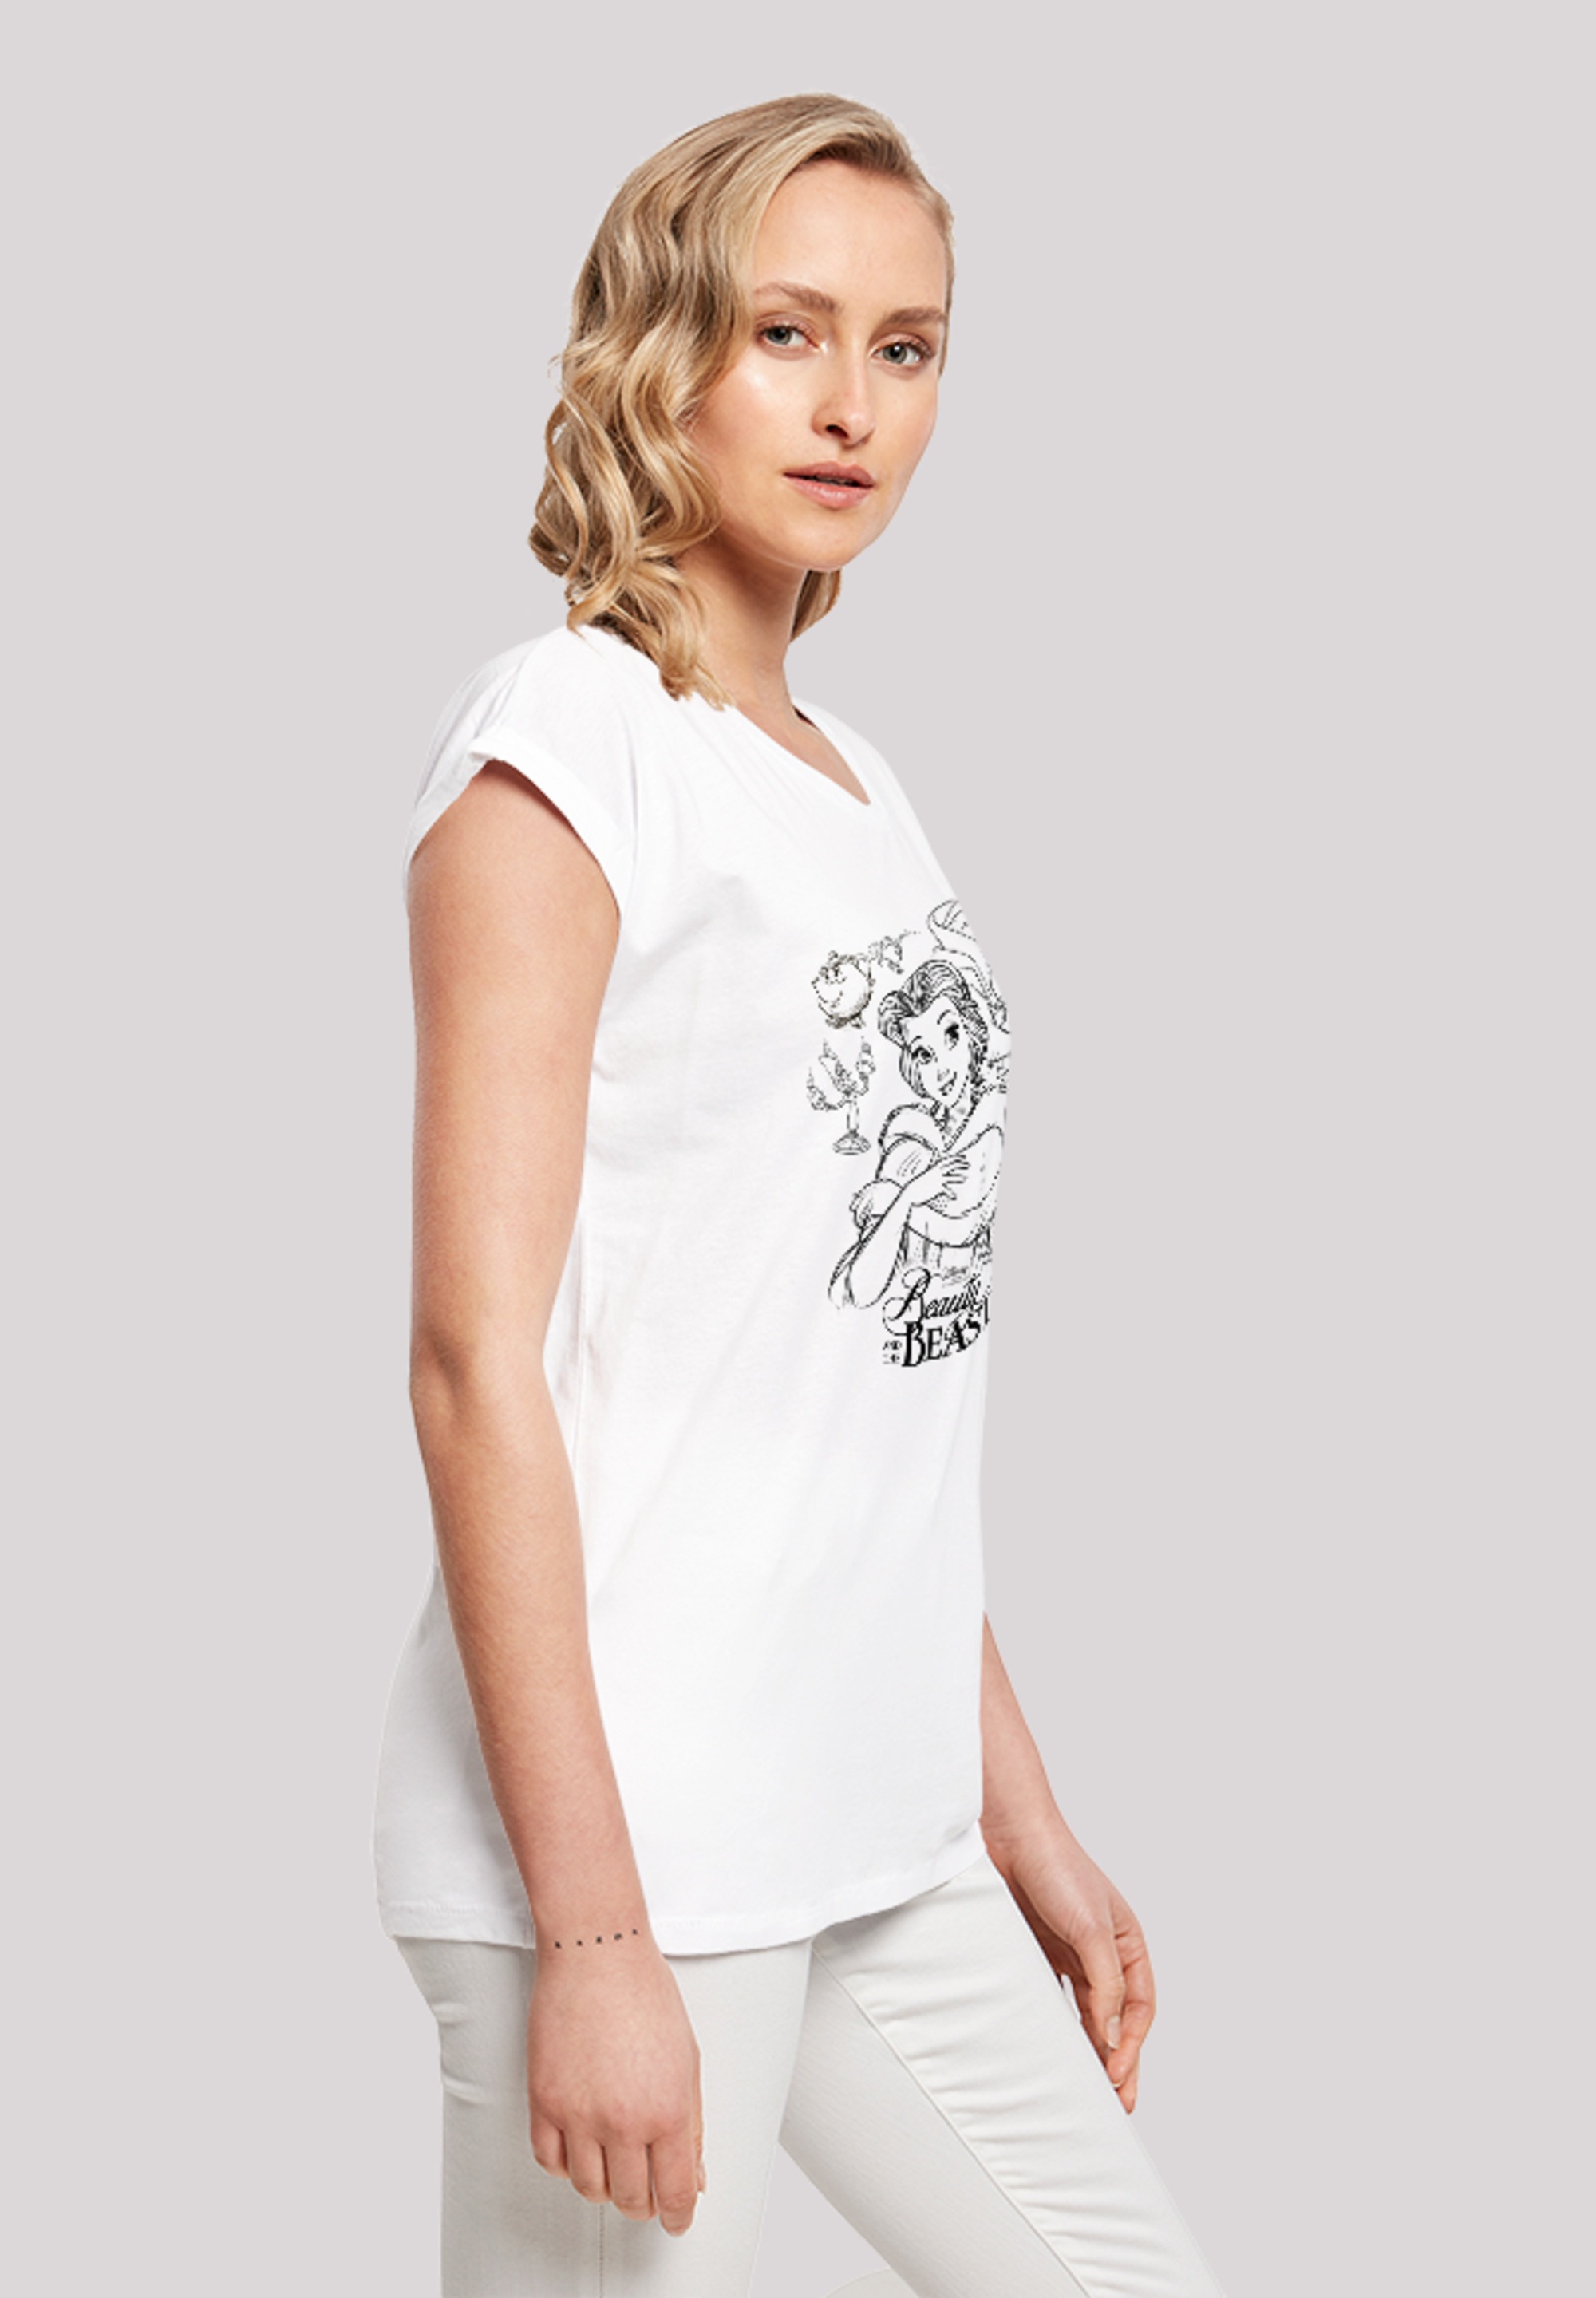 F4NT4STIC T-Shirt das Schöne Ärmel,Bedruckt Zeichnung«, I\'m Merch,Regular-Fit,Kurze shoppen Collage und ,Premium Die Biest »Disney | walking Damen